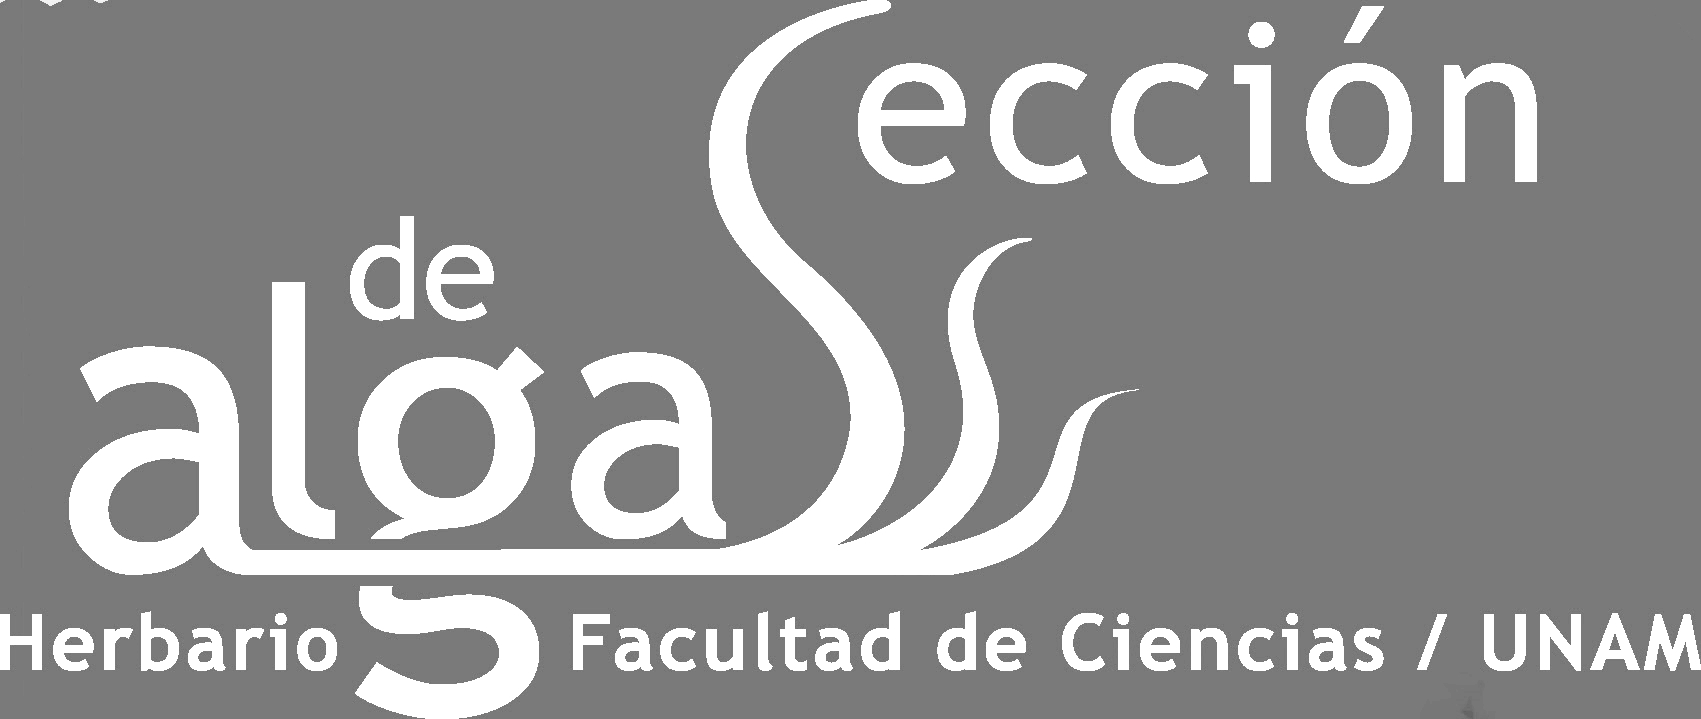 Sección de algas Facultad de Ciencias FCME